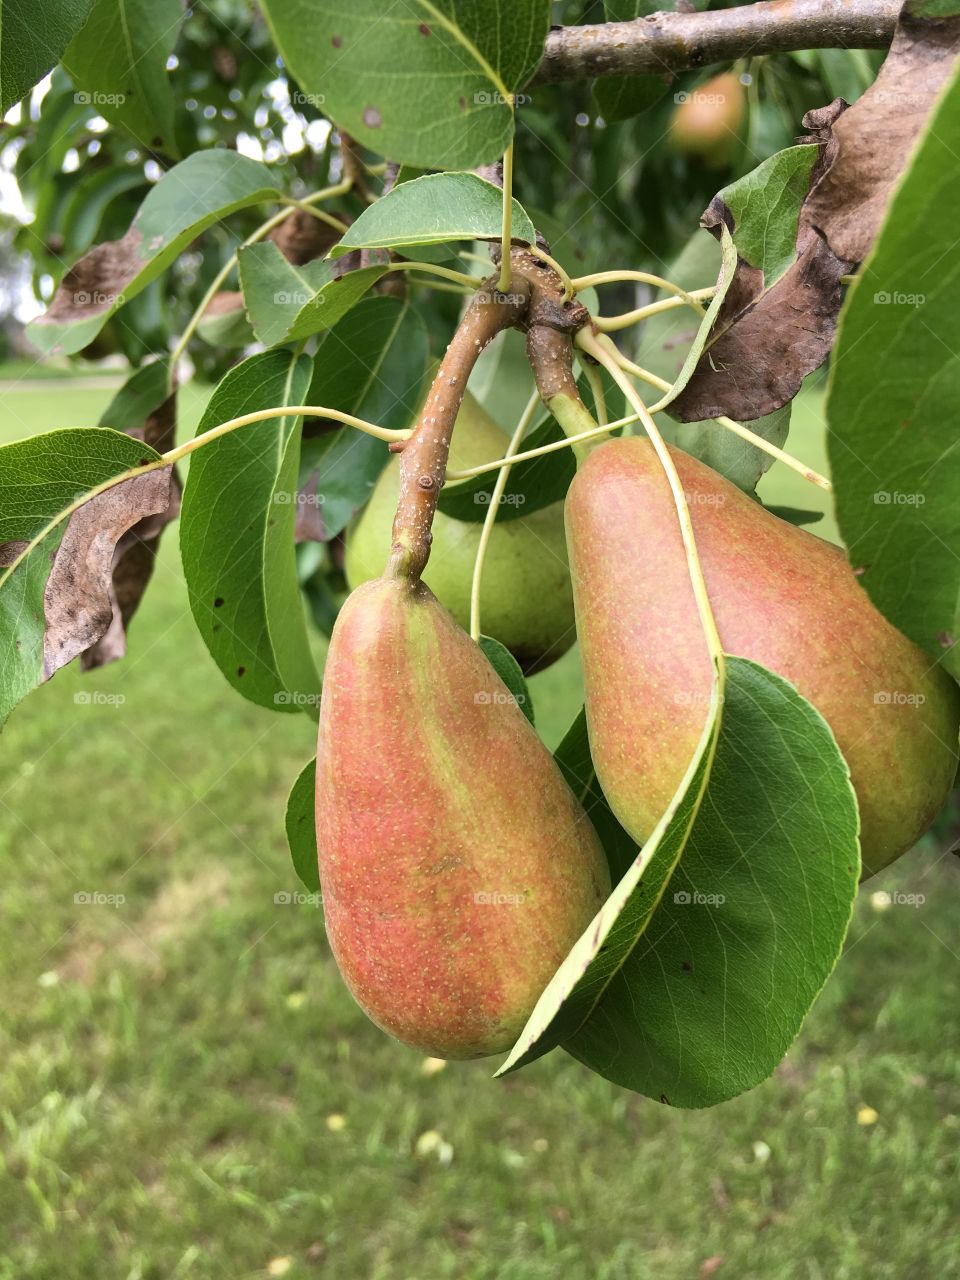 Cute pair of pears!